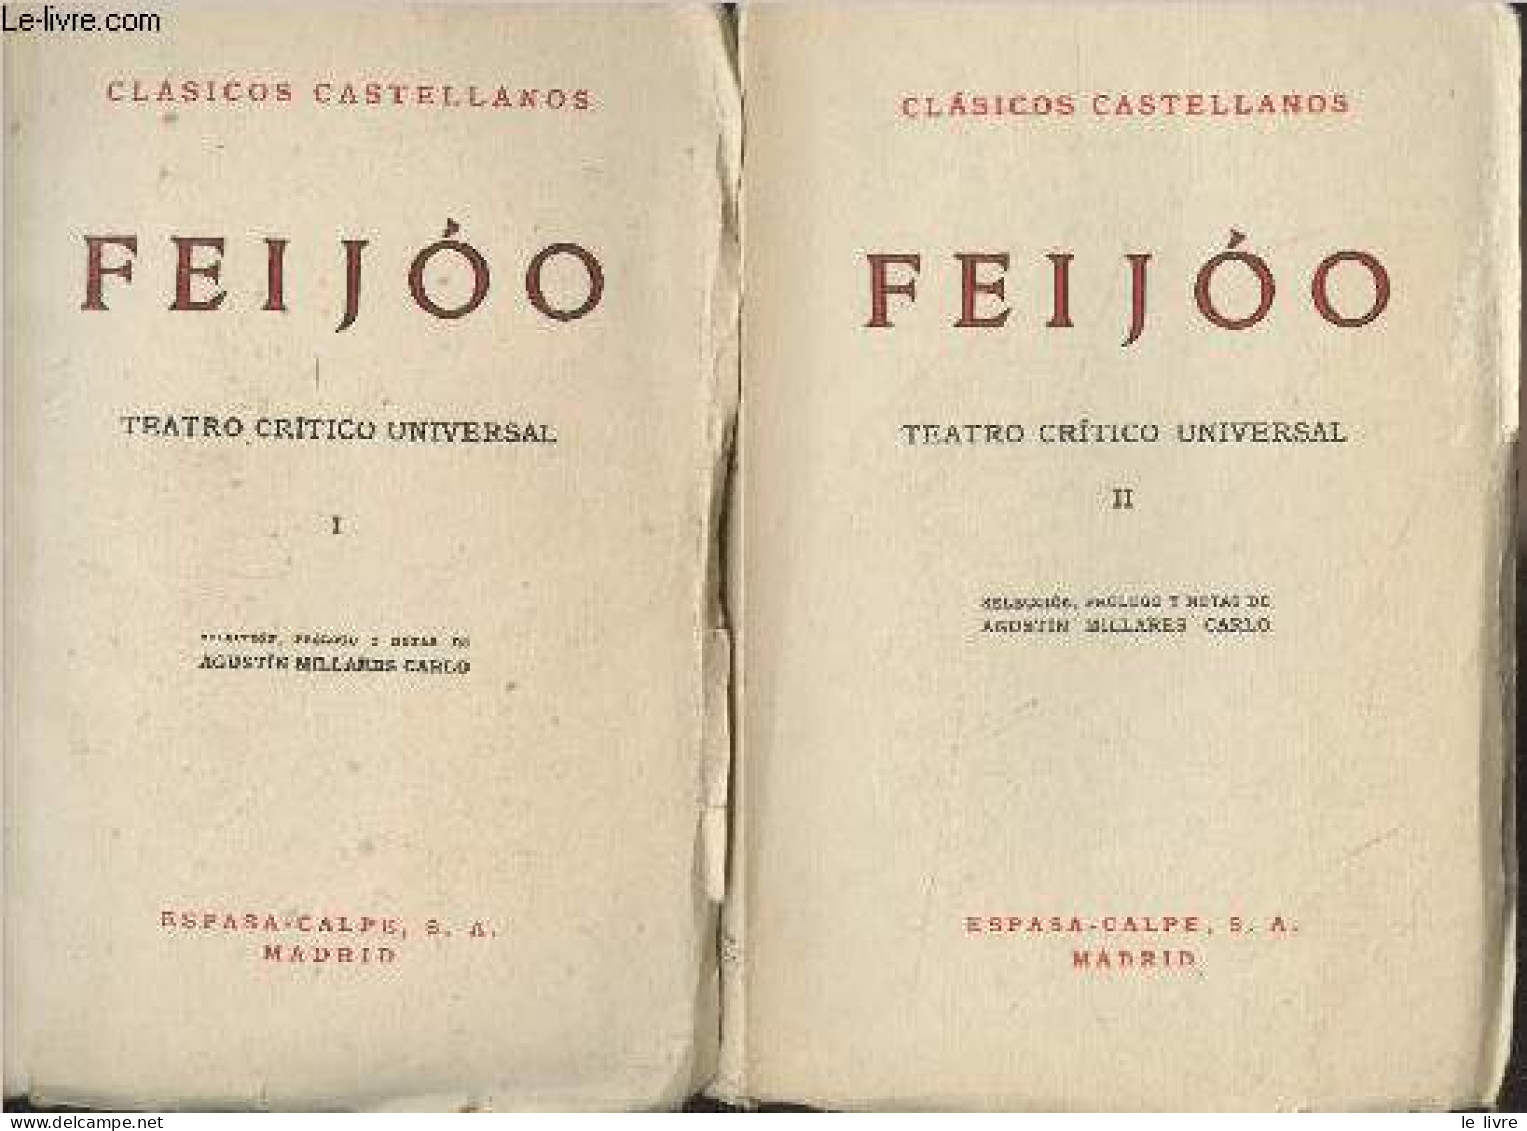 Teatro Critico Universal - III - "Clasicos Castellanos" N°48/53 - Feijoo - 1965 - Kultur